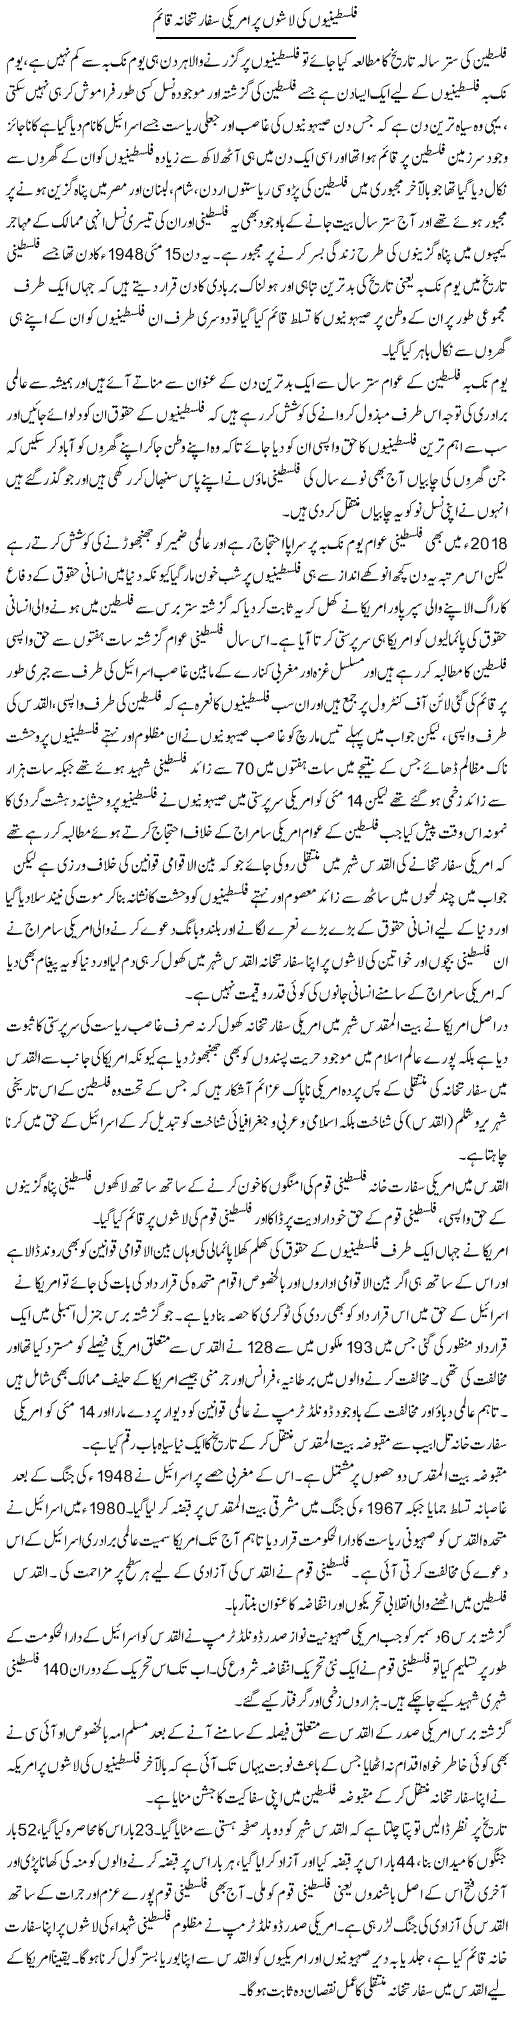 Falastiniyon Ki Lashon Par Americi Sifarat Khana Qaim | Sabir Karbalai | Daily Urdu Columns